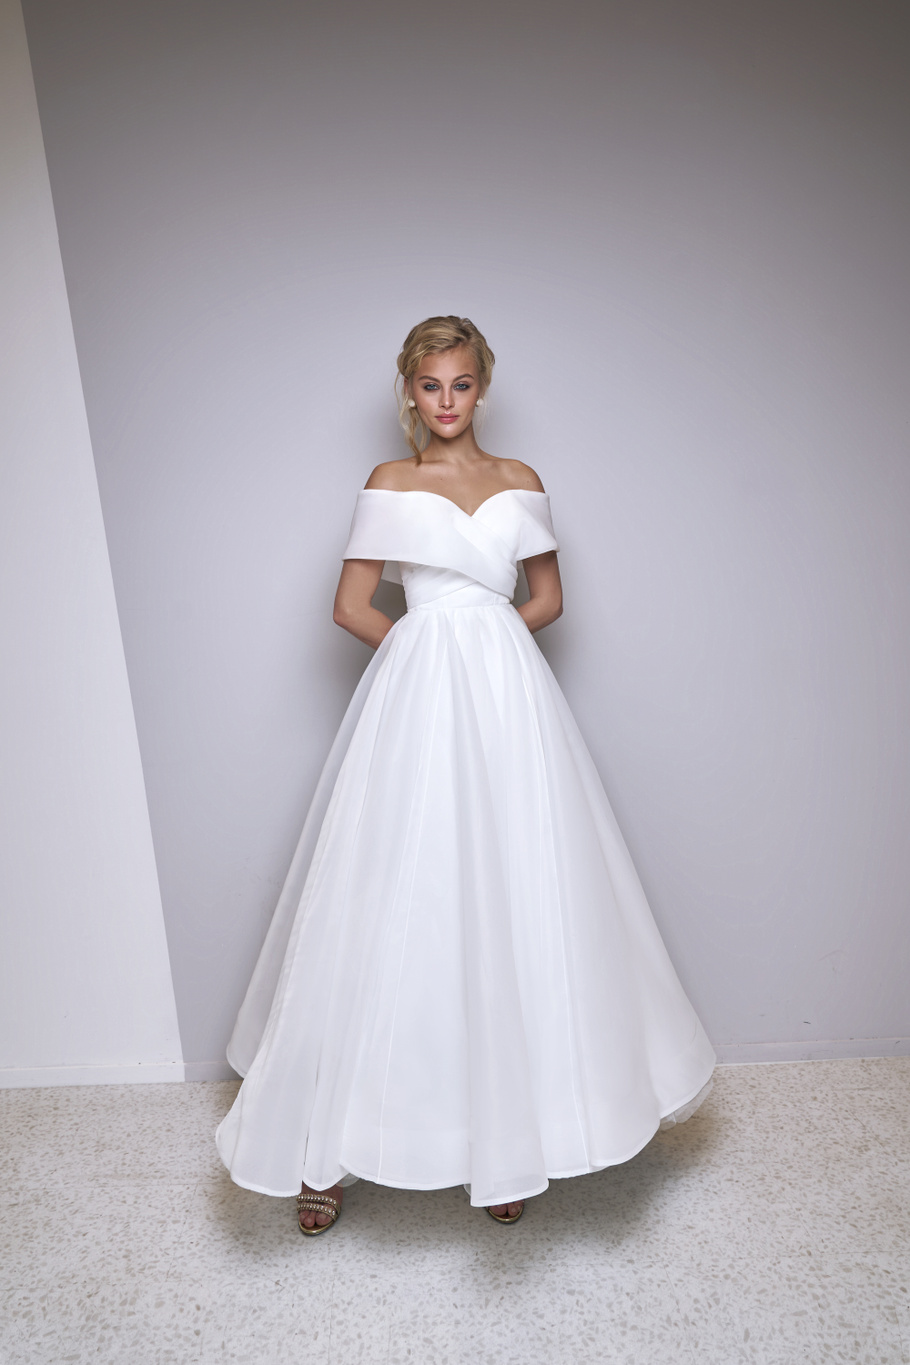 Свадебное платье «Олджи» Марта — купить в Санкт-Петербурге платье Олджи из коллекции 2021 года